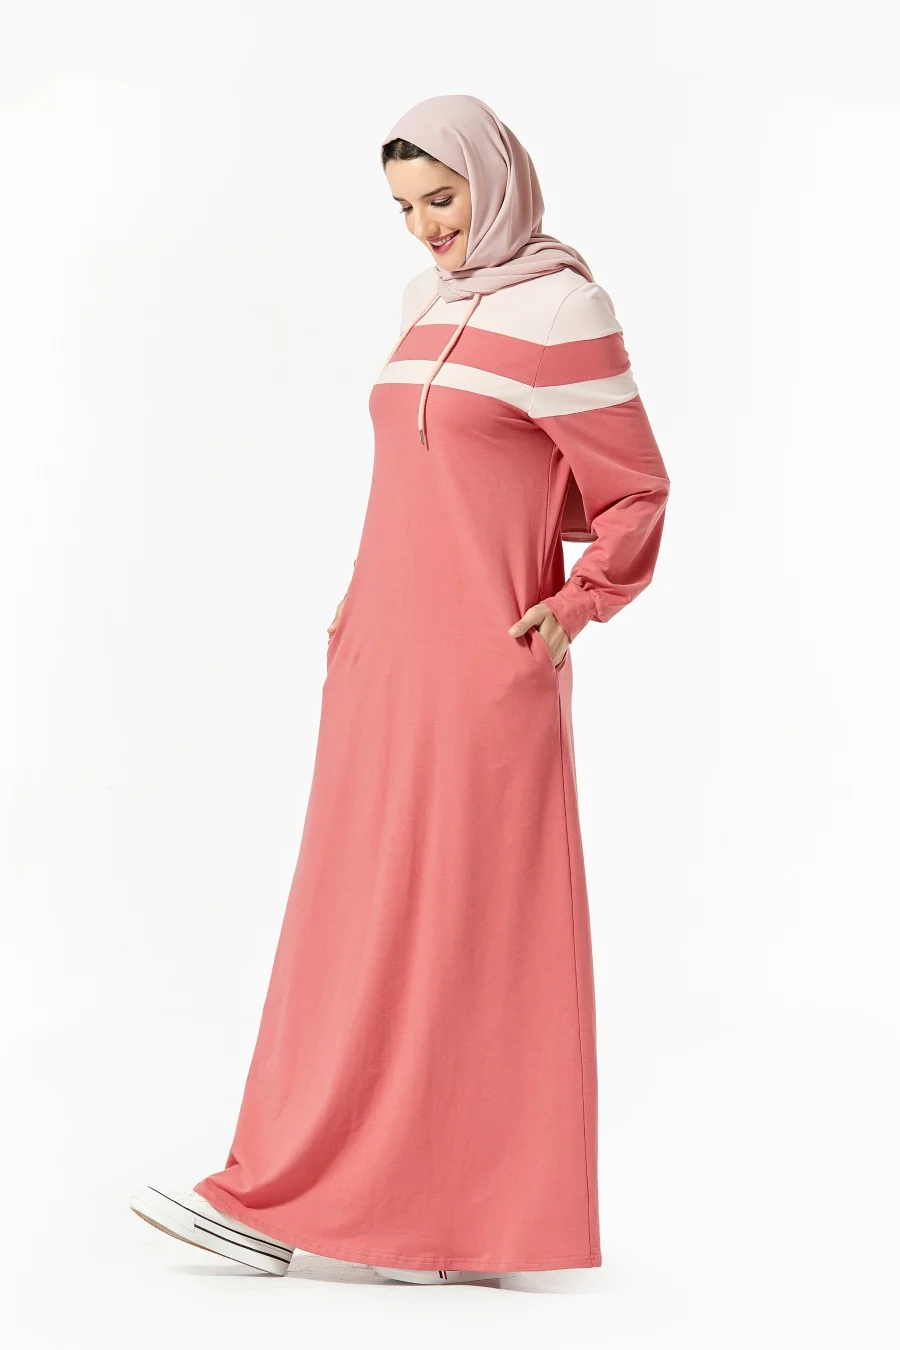 Siskakia, вязаное длинное платье с капюшоном, модное, в полоску, цвет блока, макси, свитер, платья, Осень-зима, для прогулок, бега, одежда розового цвета